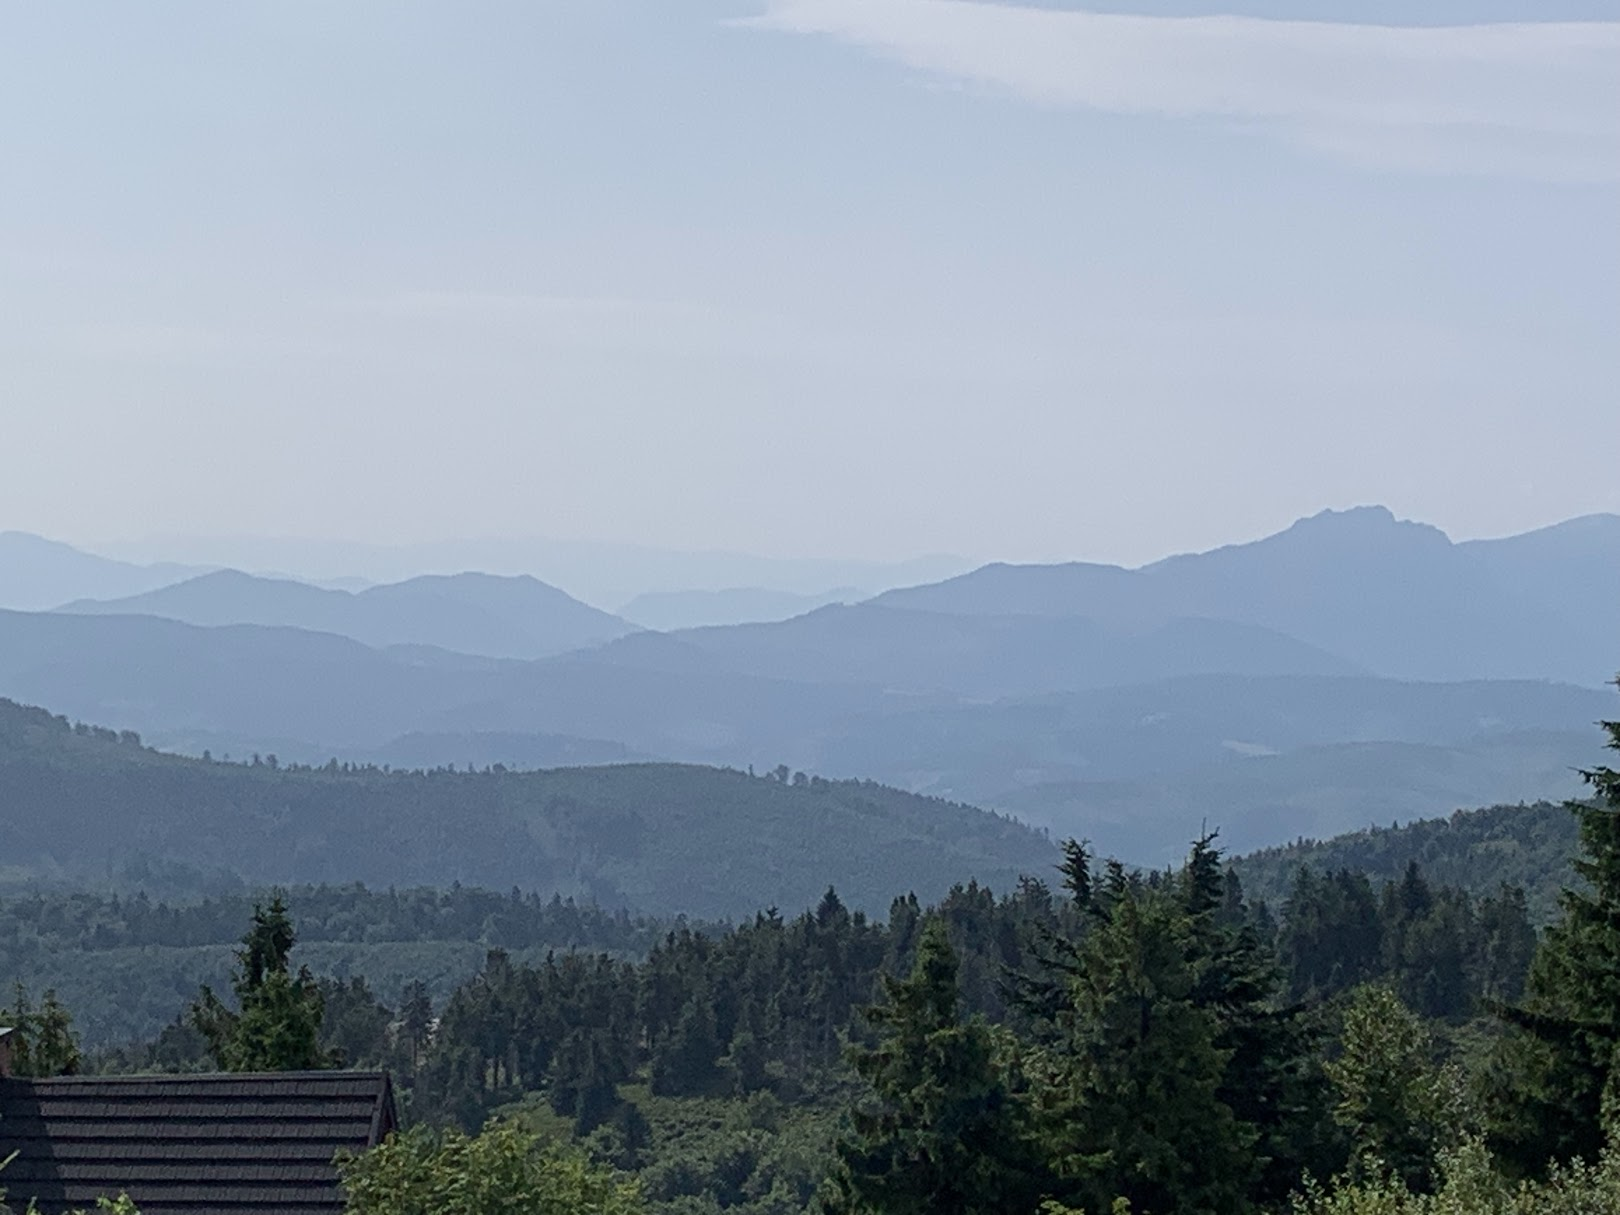 Widok z Wielkiej Raczy na płd-wsch. Najwyższa góra na zdjęciu, po prawej, z poszarpanym szczytem to Velky Rozsutec w słowackiej Małej Fatrze.